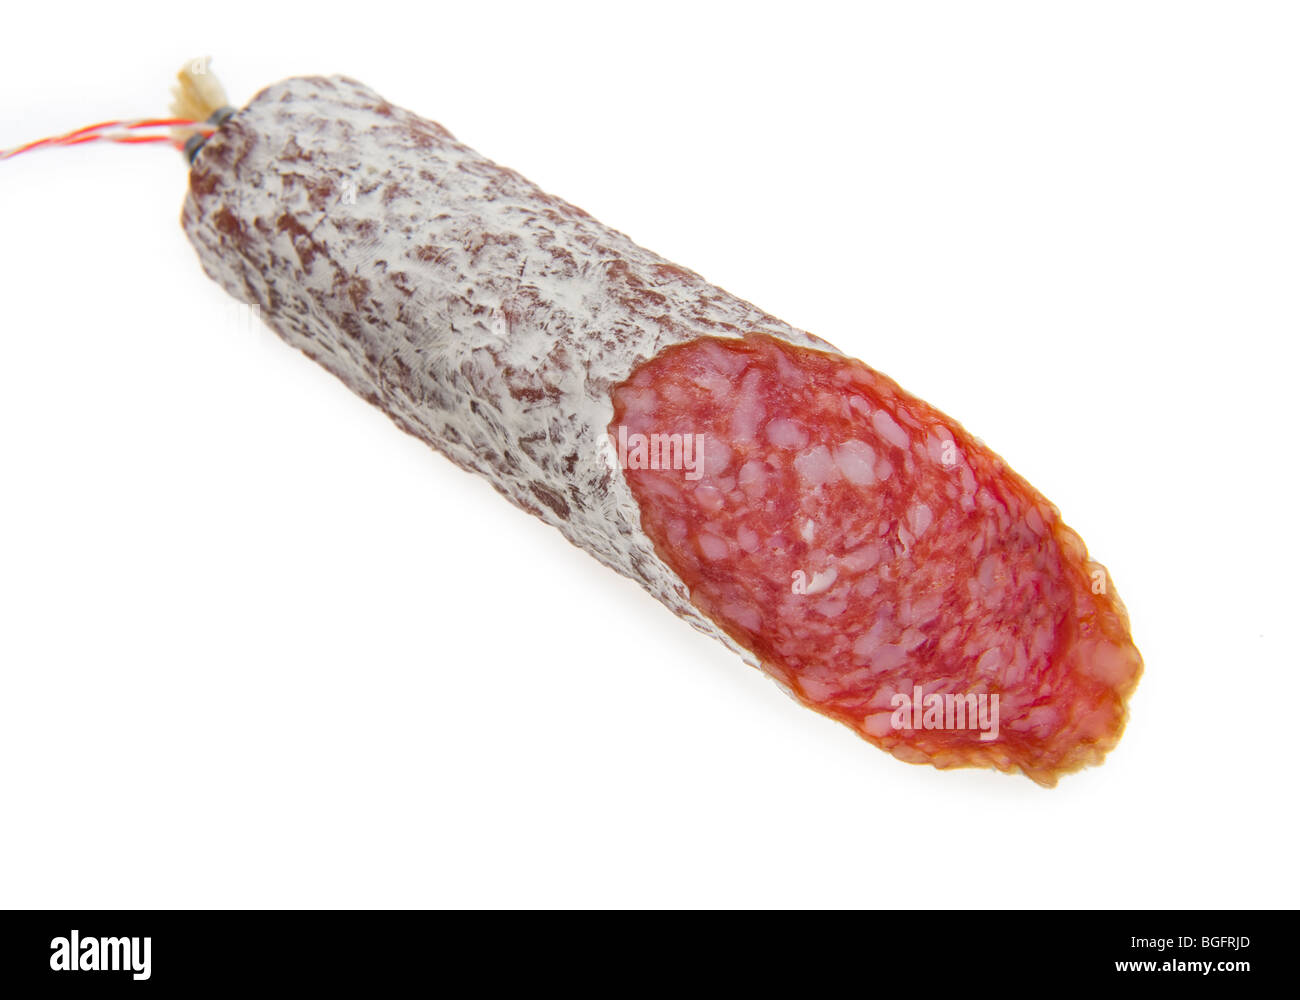 italienische Italien Salami Wurst geheilt Fleisch Schweinefleisch Chorizo Salami Wurst Spanien kochen, Kochen, Gesundheit, gesund, orga Stockfoto